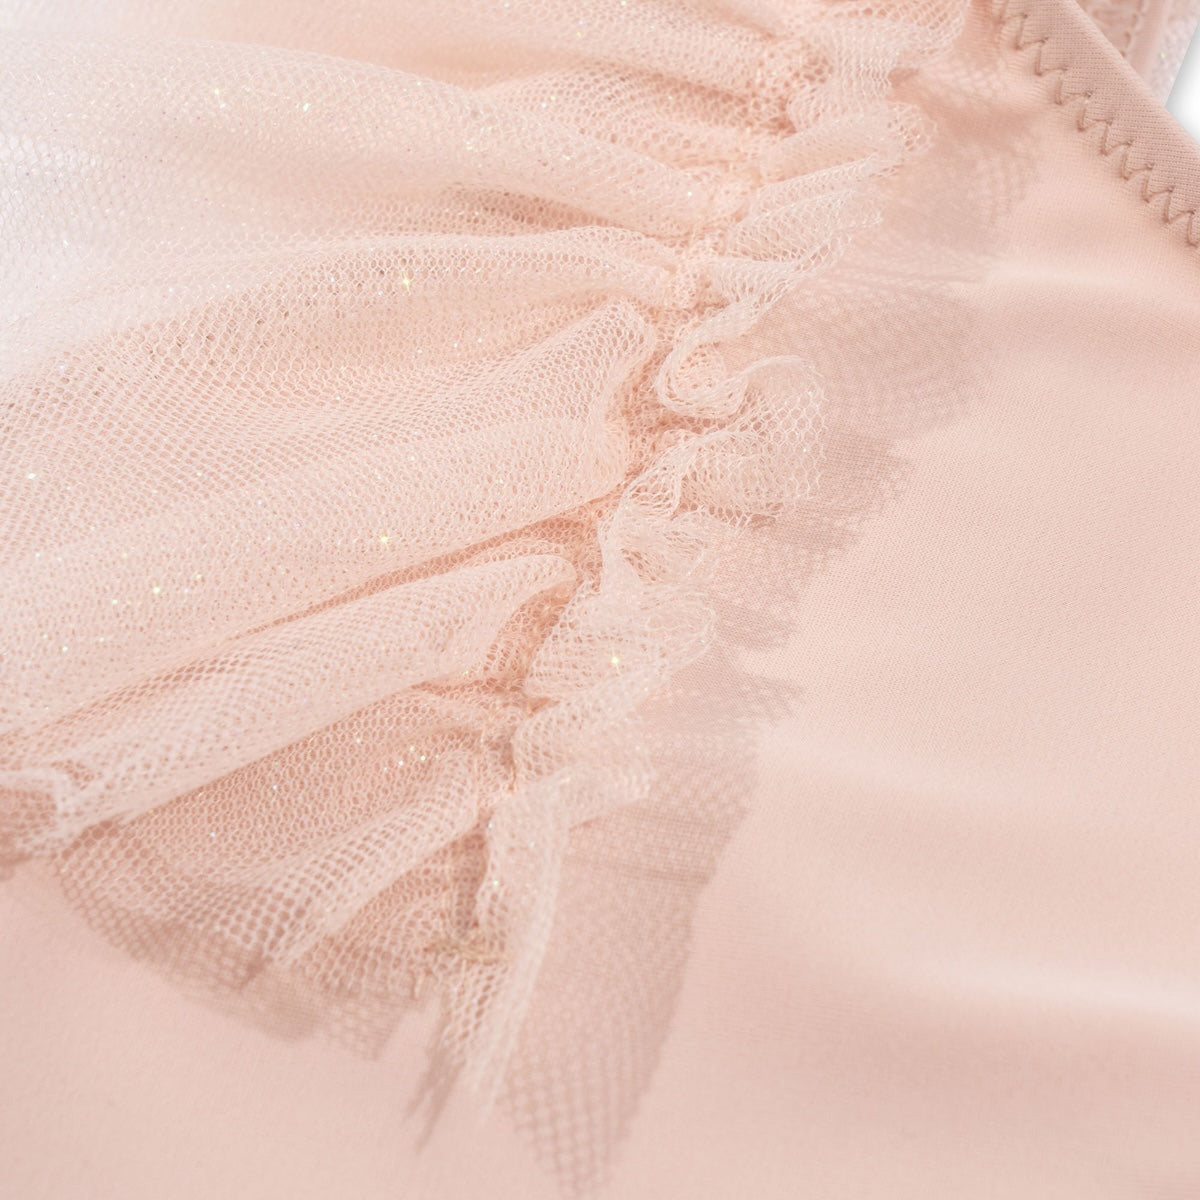 Dit geweldige strut badpak in cameo rose is net een ballerinapakje! Het zal dan ook een favoriet item van jouw kleintje worden! Dit badpak heeft een mooie roze kleur een schattige print met een kers. Wat dit badpak zo speciaal maakt, is dat de mouwtjes gemaakt zijn van tule. 